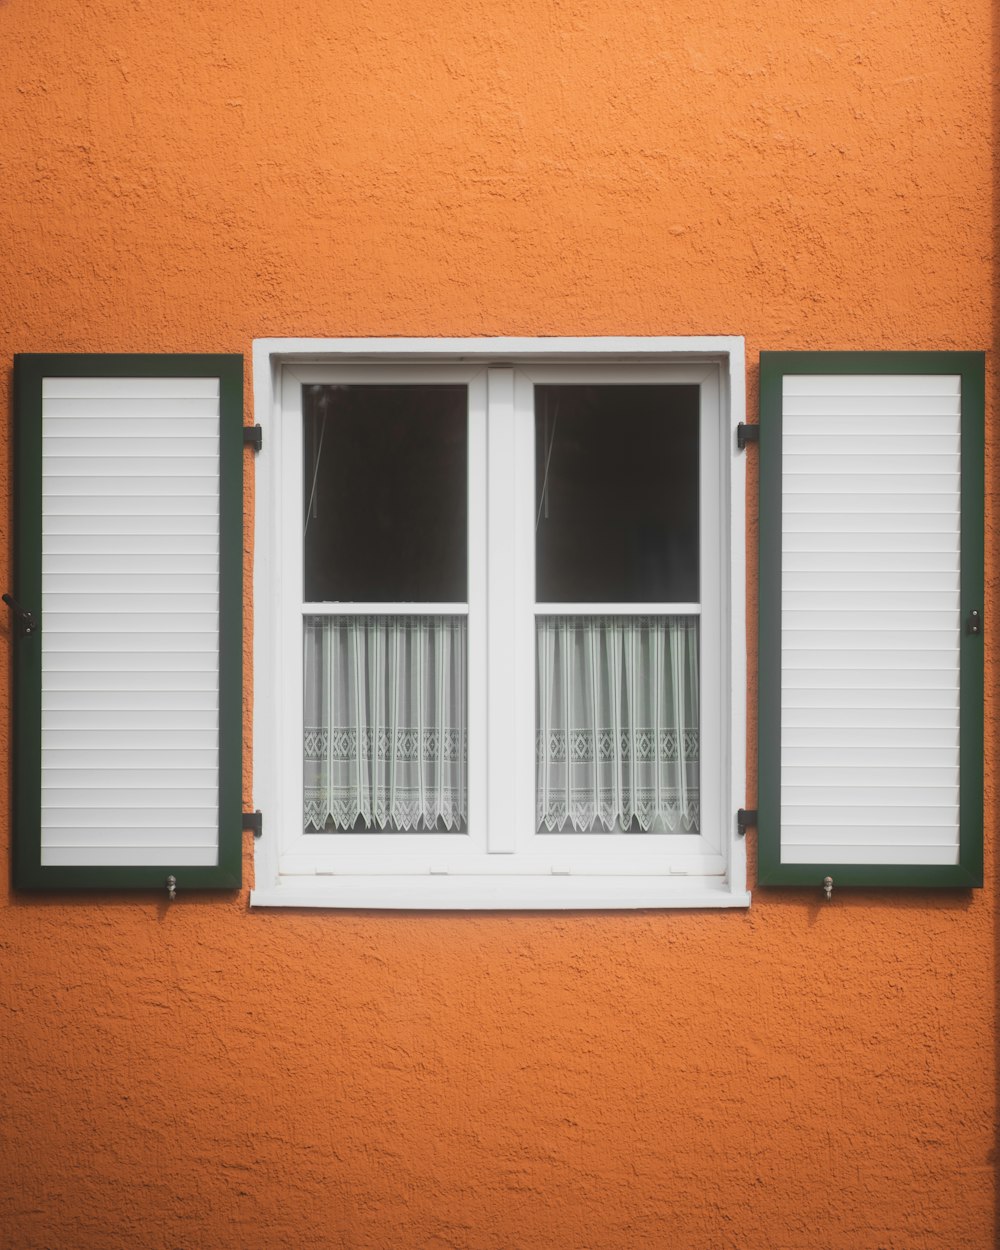 Un primer plano de una ventana con persianas verdes